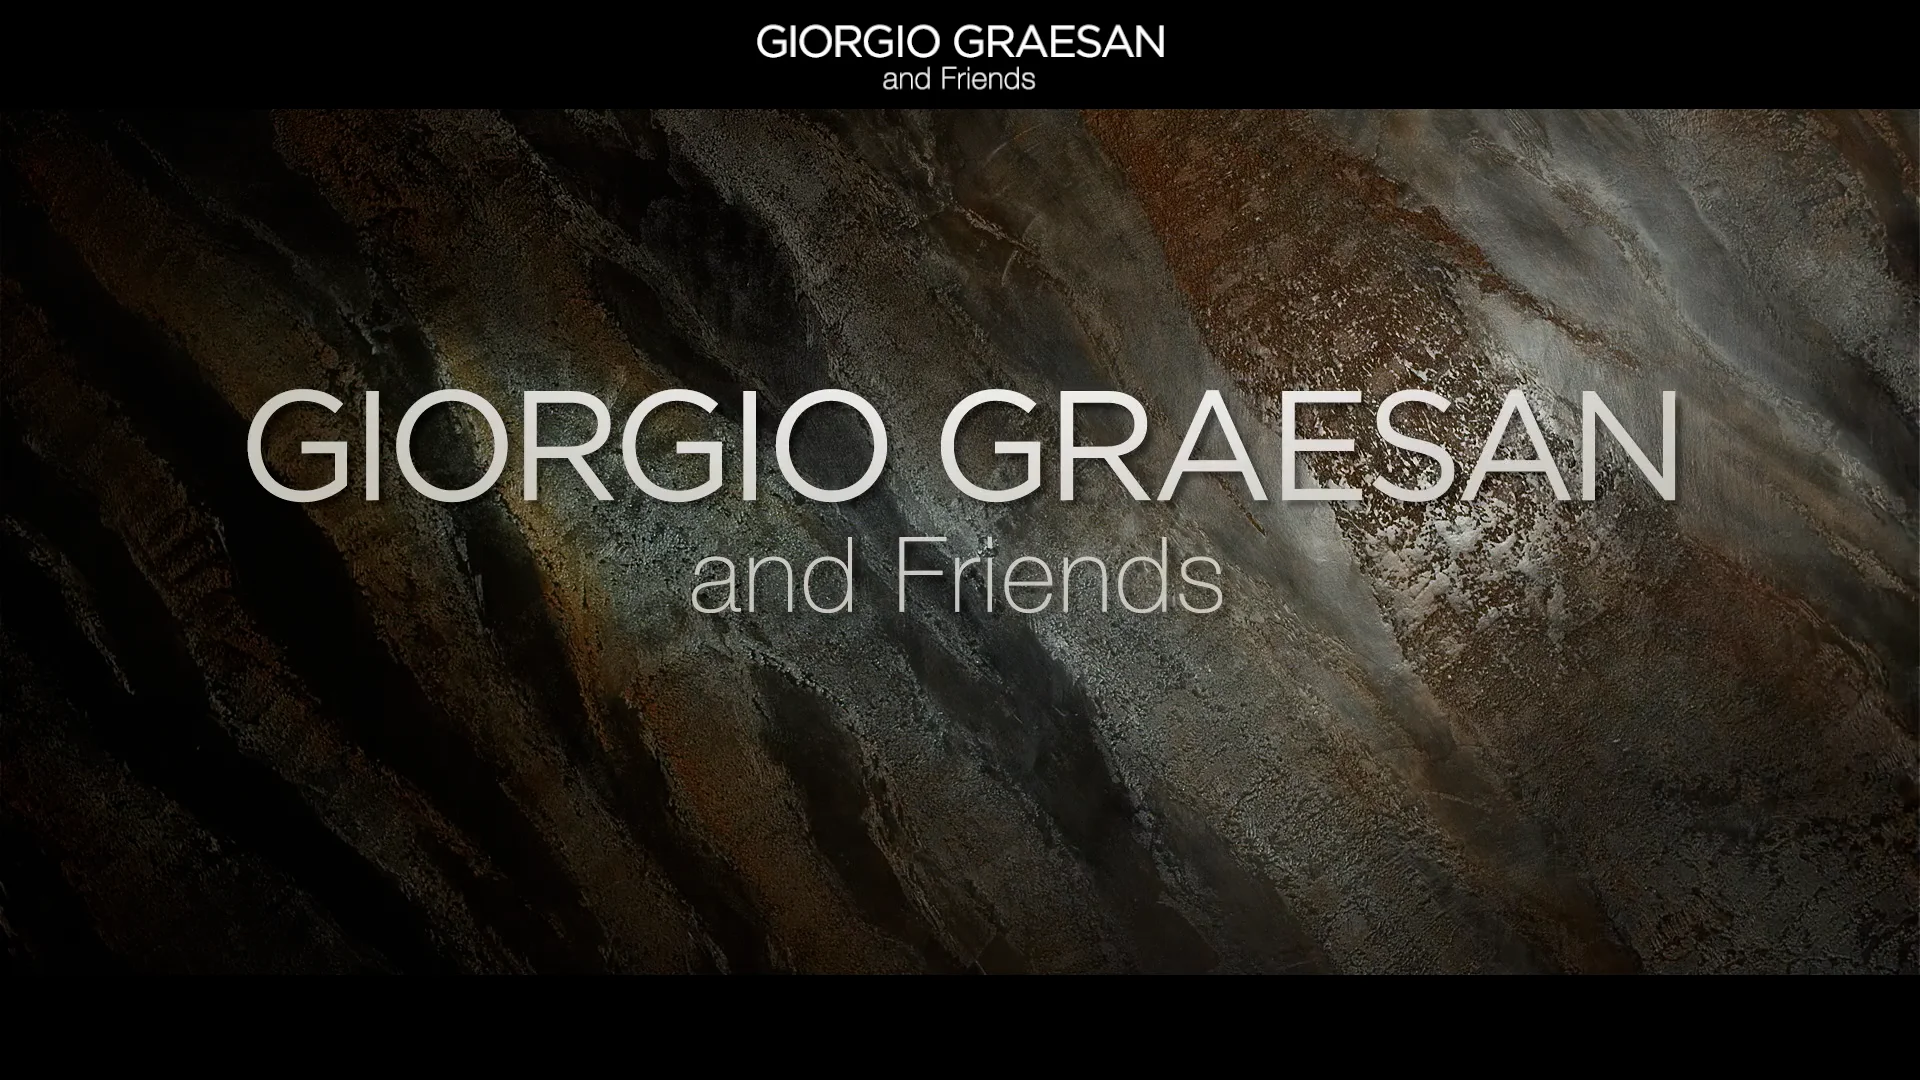 Giorgio Graesan and Friends - Spot web 20 sec on Vimeo